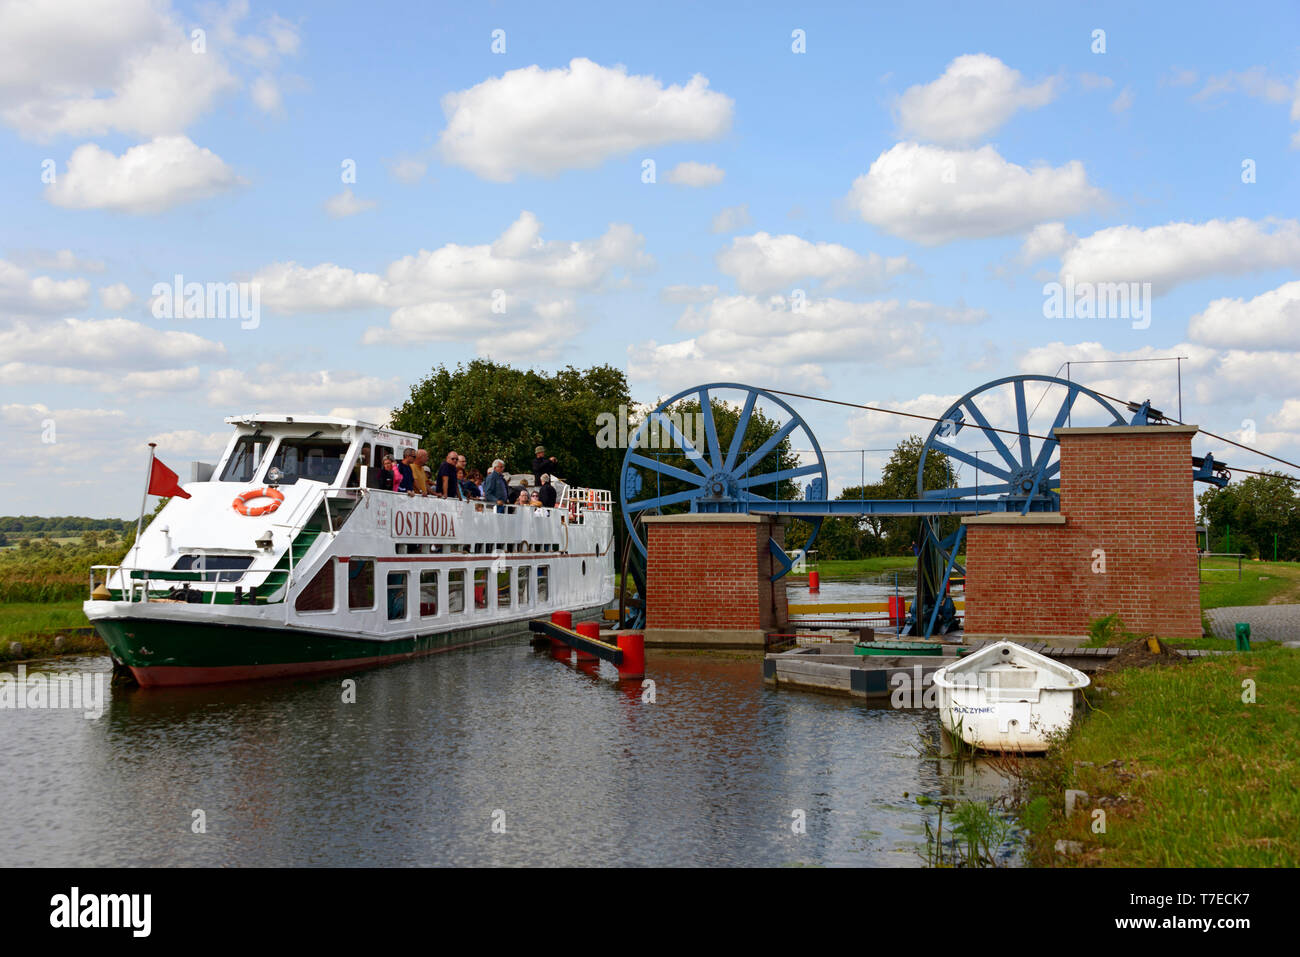 Ship Ostroda, Katy, Elblag-Ostroda Canal, Warmia Masuria, Poland Stock Photo